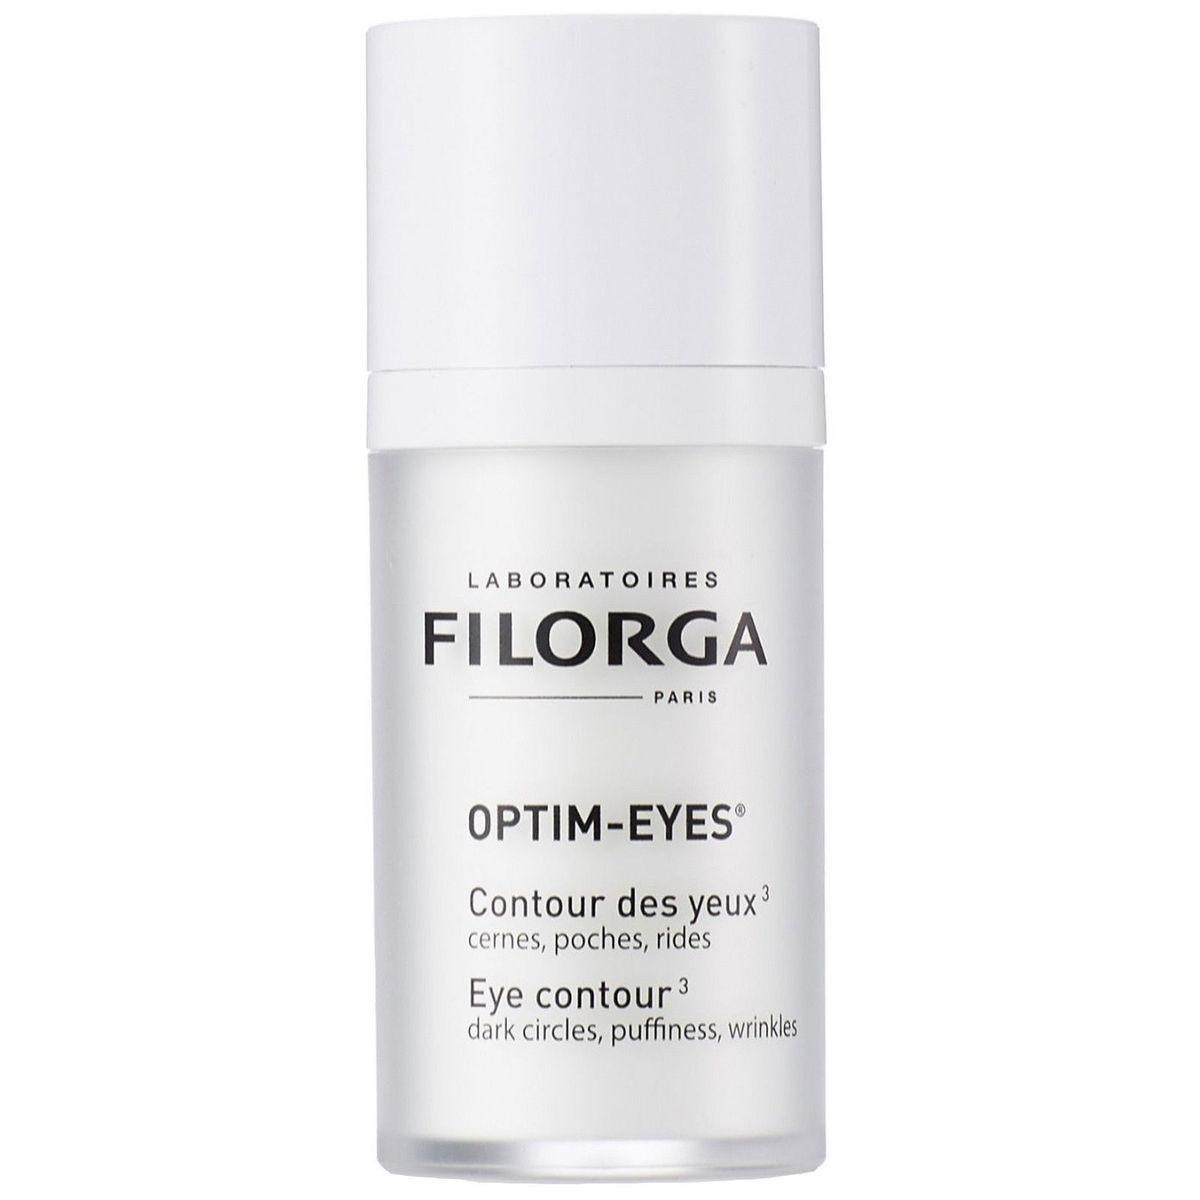 Filorga Optim Eyes Грижа за околоочния контур против бръчки, отоци и тъмни кръгове